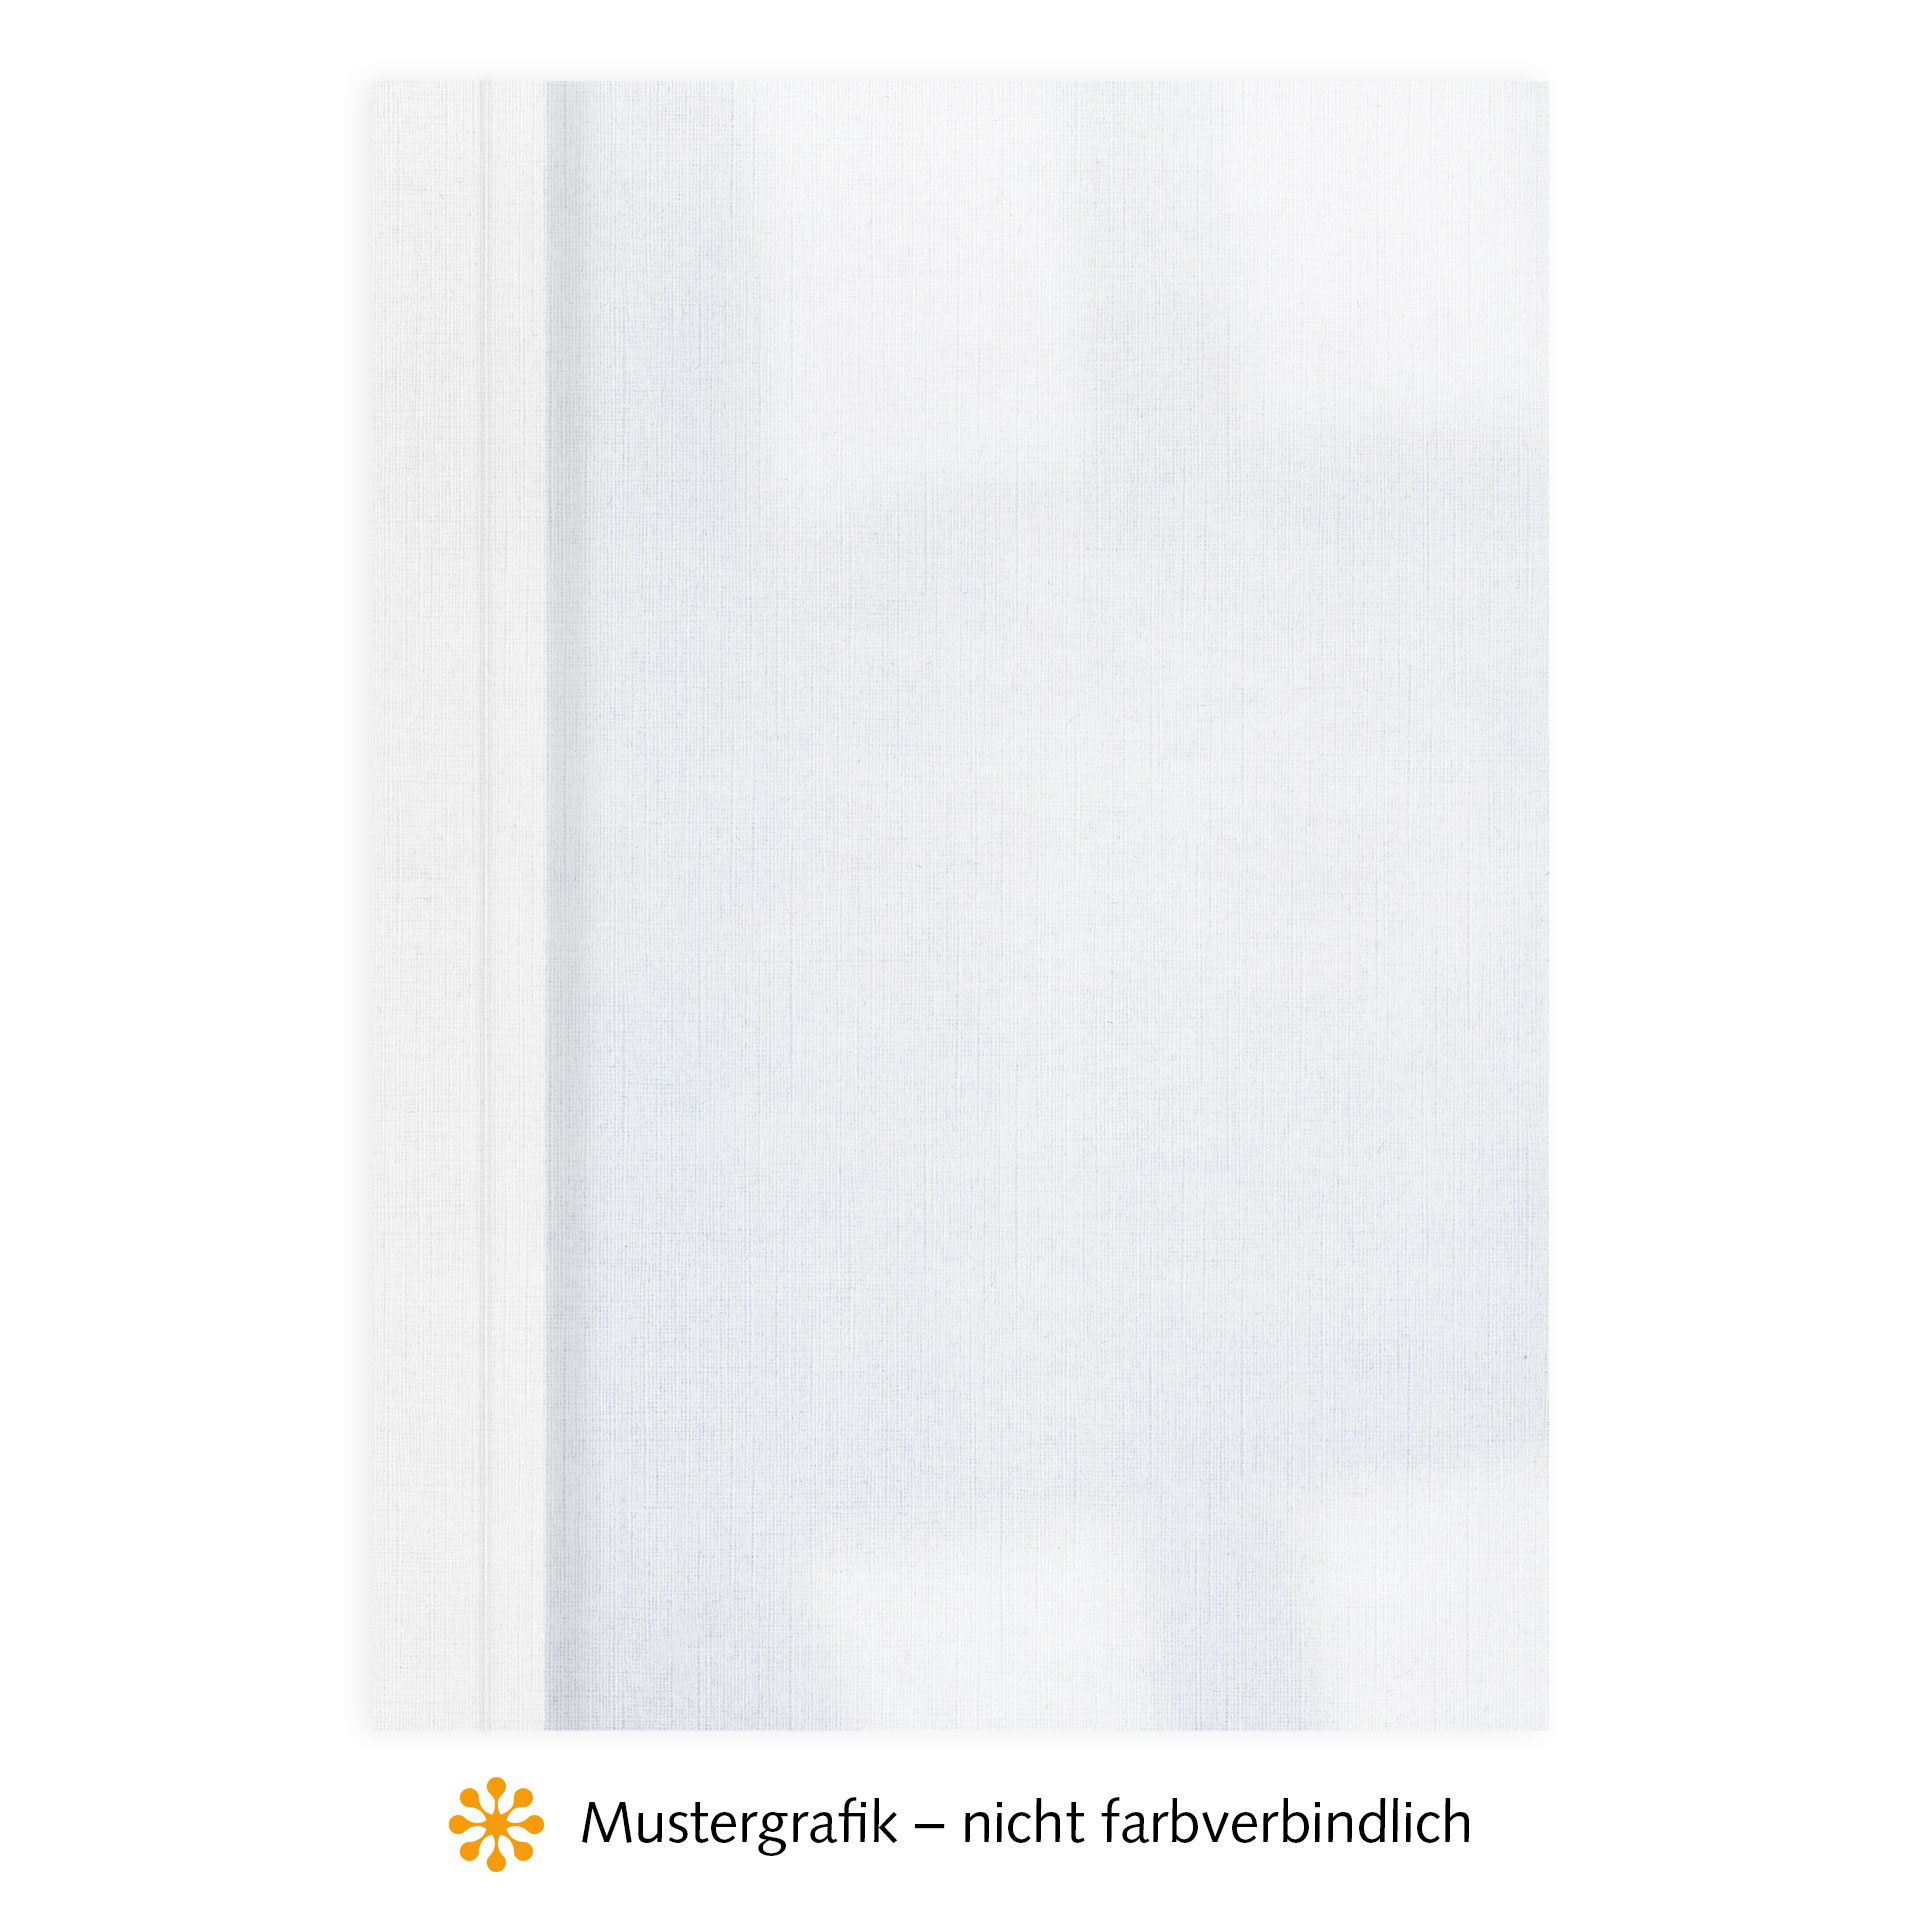 Ösenmappen DUO Cover, Vorderseite Folie KLAR transparent, Rückseite Karton Leinen, Weiß, 8 mm, 71 bis 80 Blatt